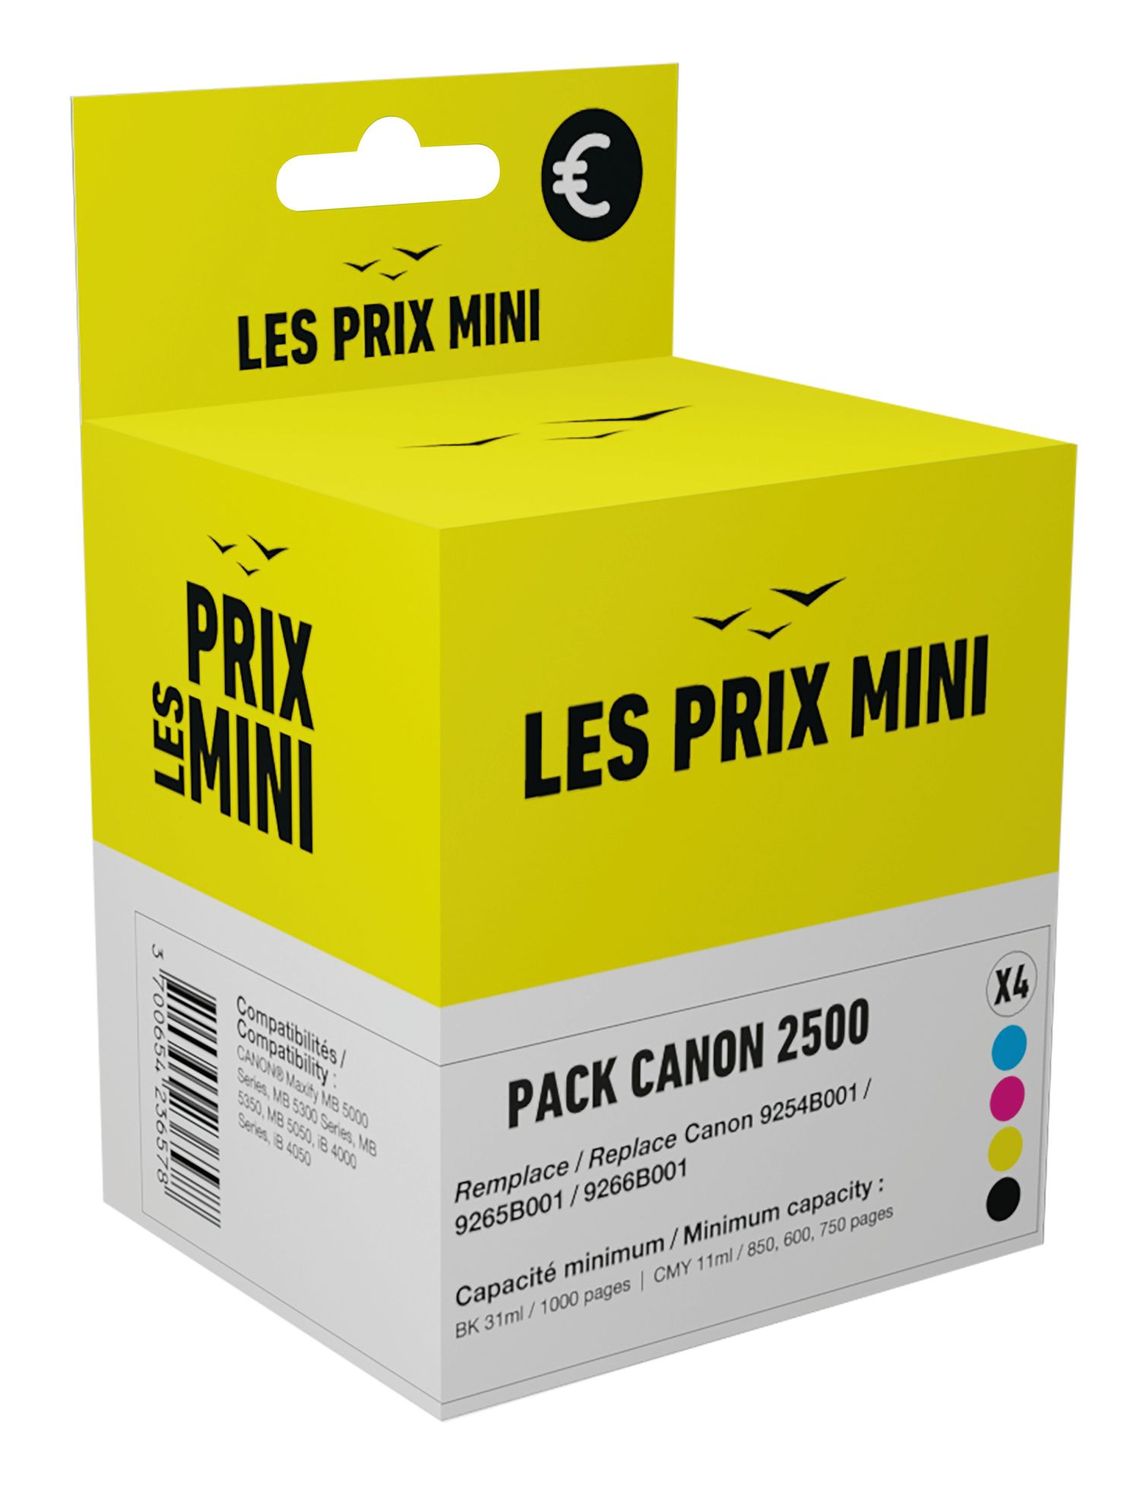 Cartouche compatible Canon PGI-2500 - pack de 4 - noir, jaune, cyan, magenta - prix mini